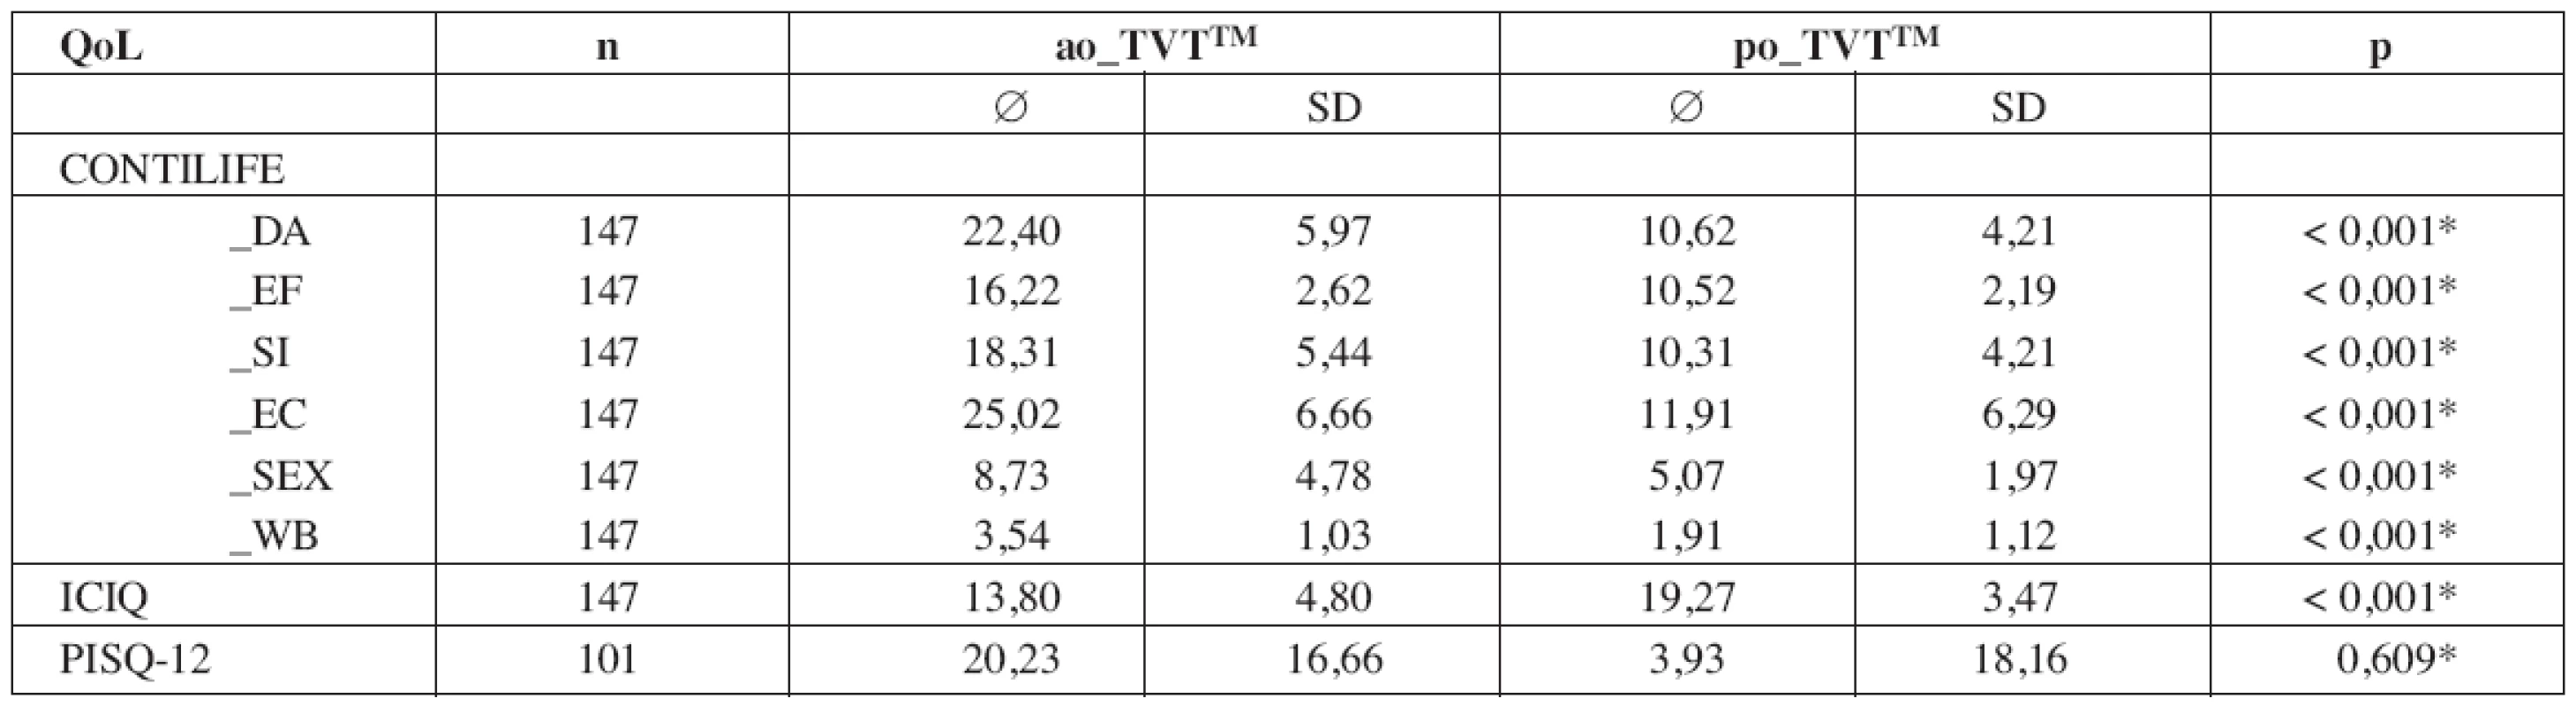 Základní statistické charakteristiky pro hodnocení položek QoL před TVT OTM a 12 měsíců po TVT OTM.
Poslední sloupec p demonstruje diference stejných položek IQL pomocí párového t-testu